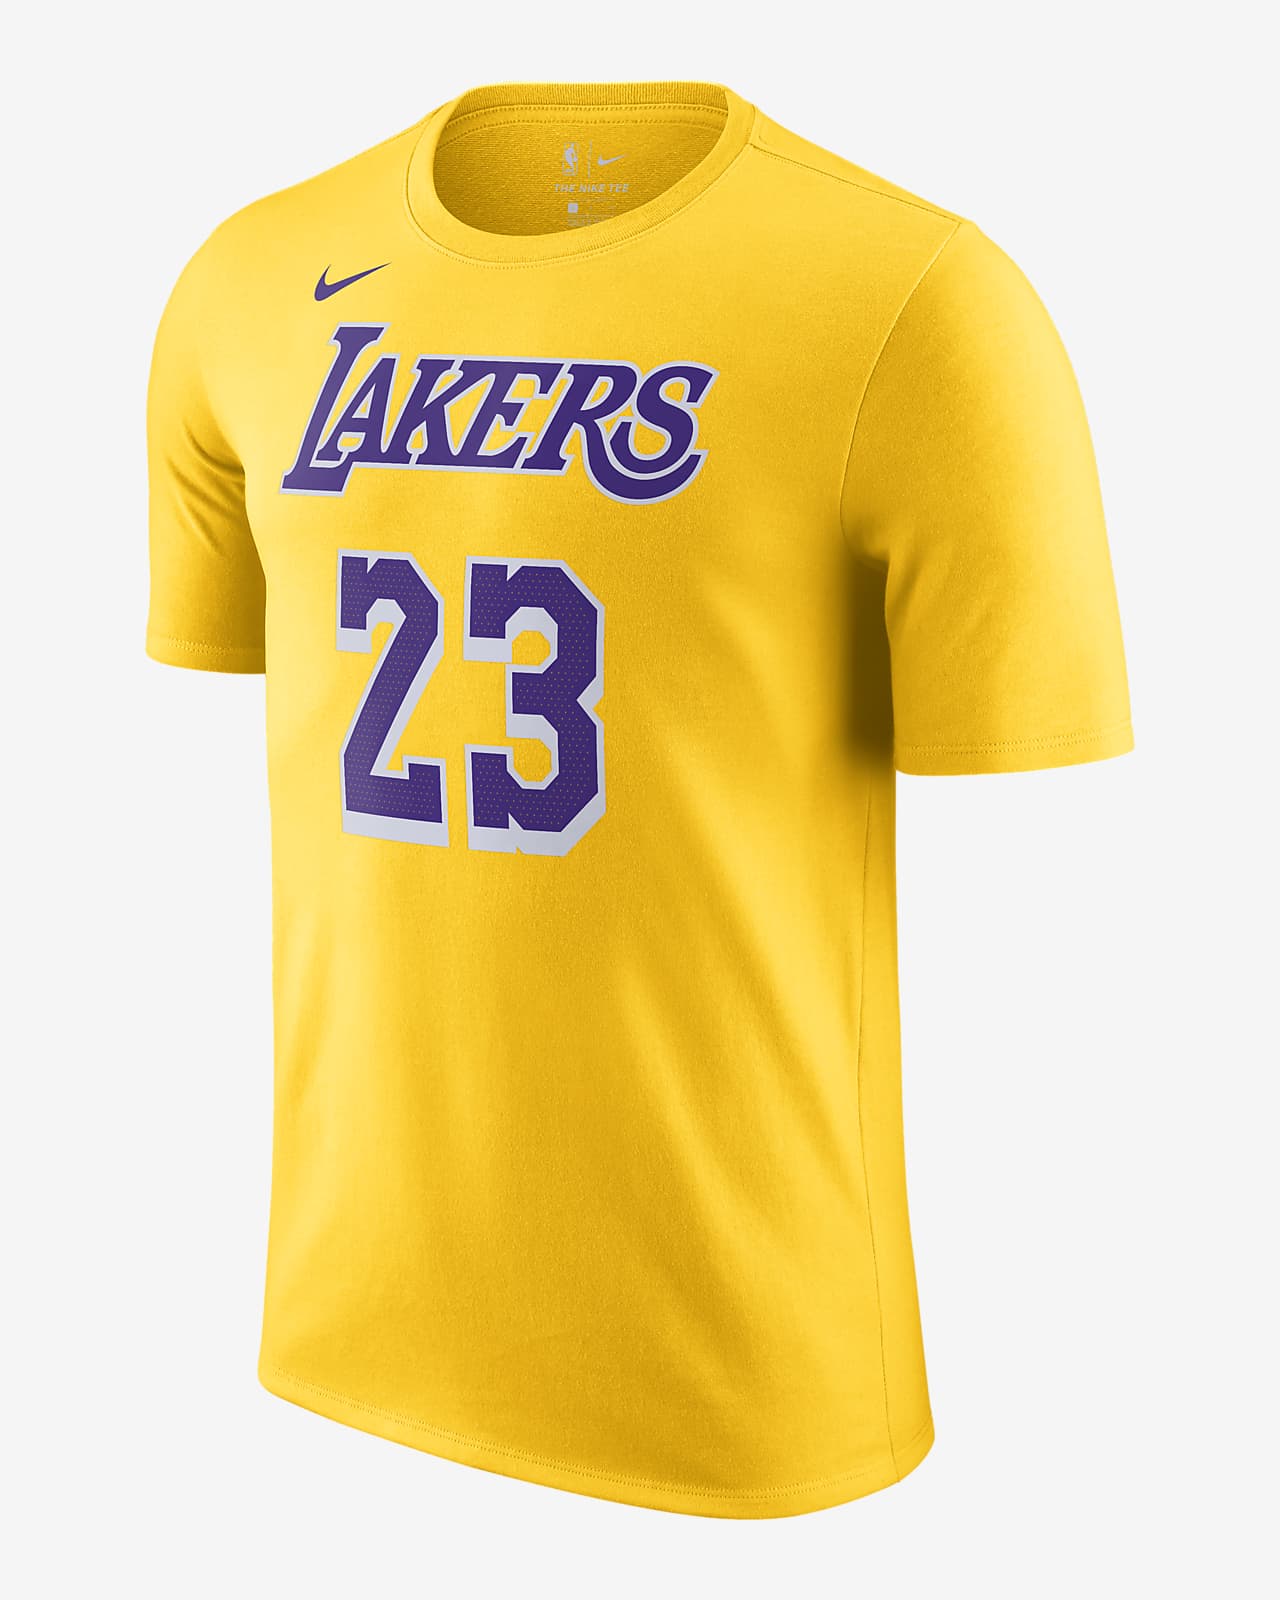 Lakers Men's Nike NBA T-Shirt. Nike.com